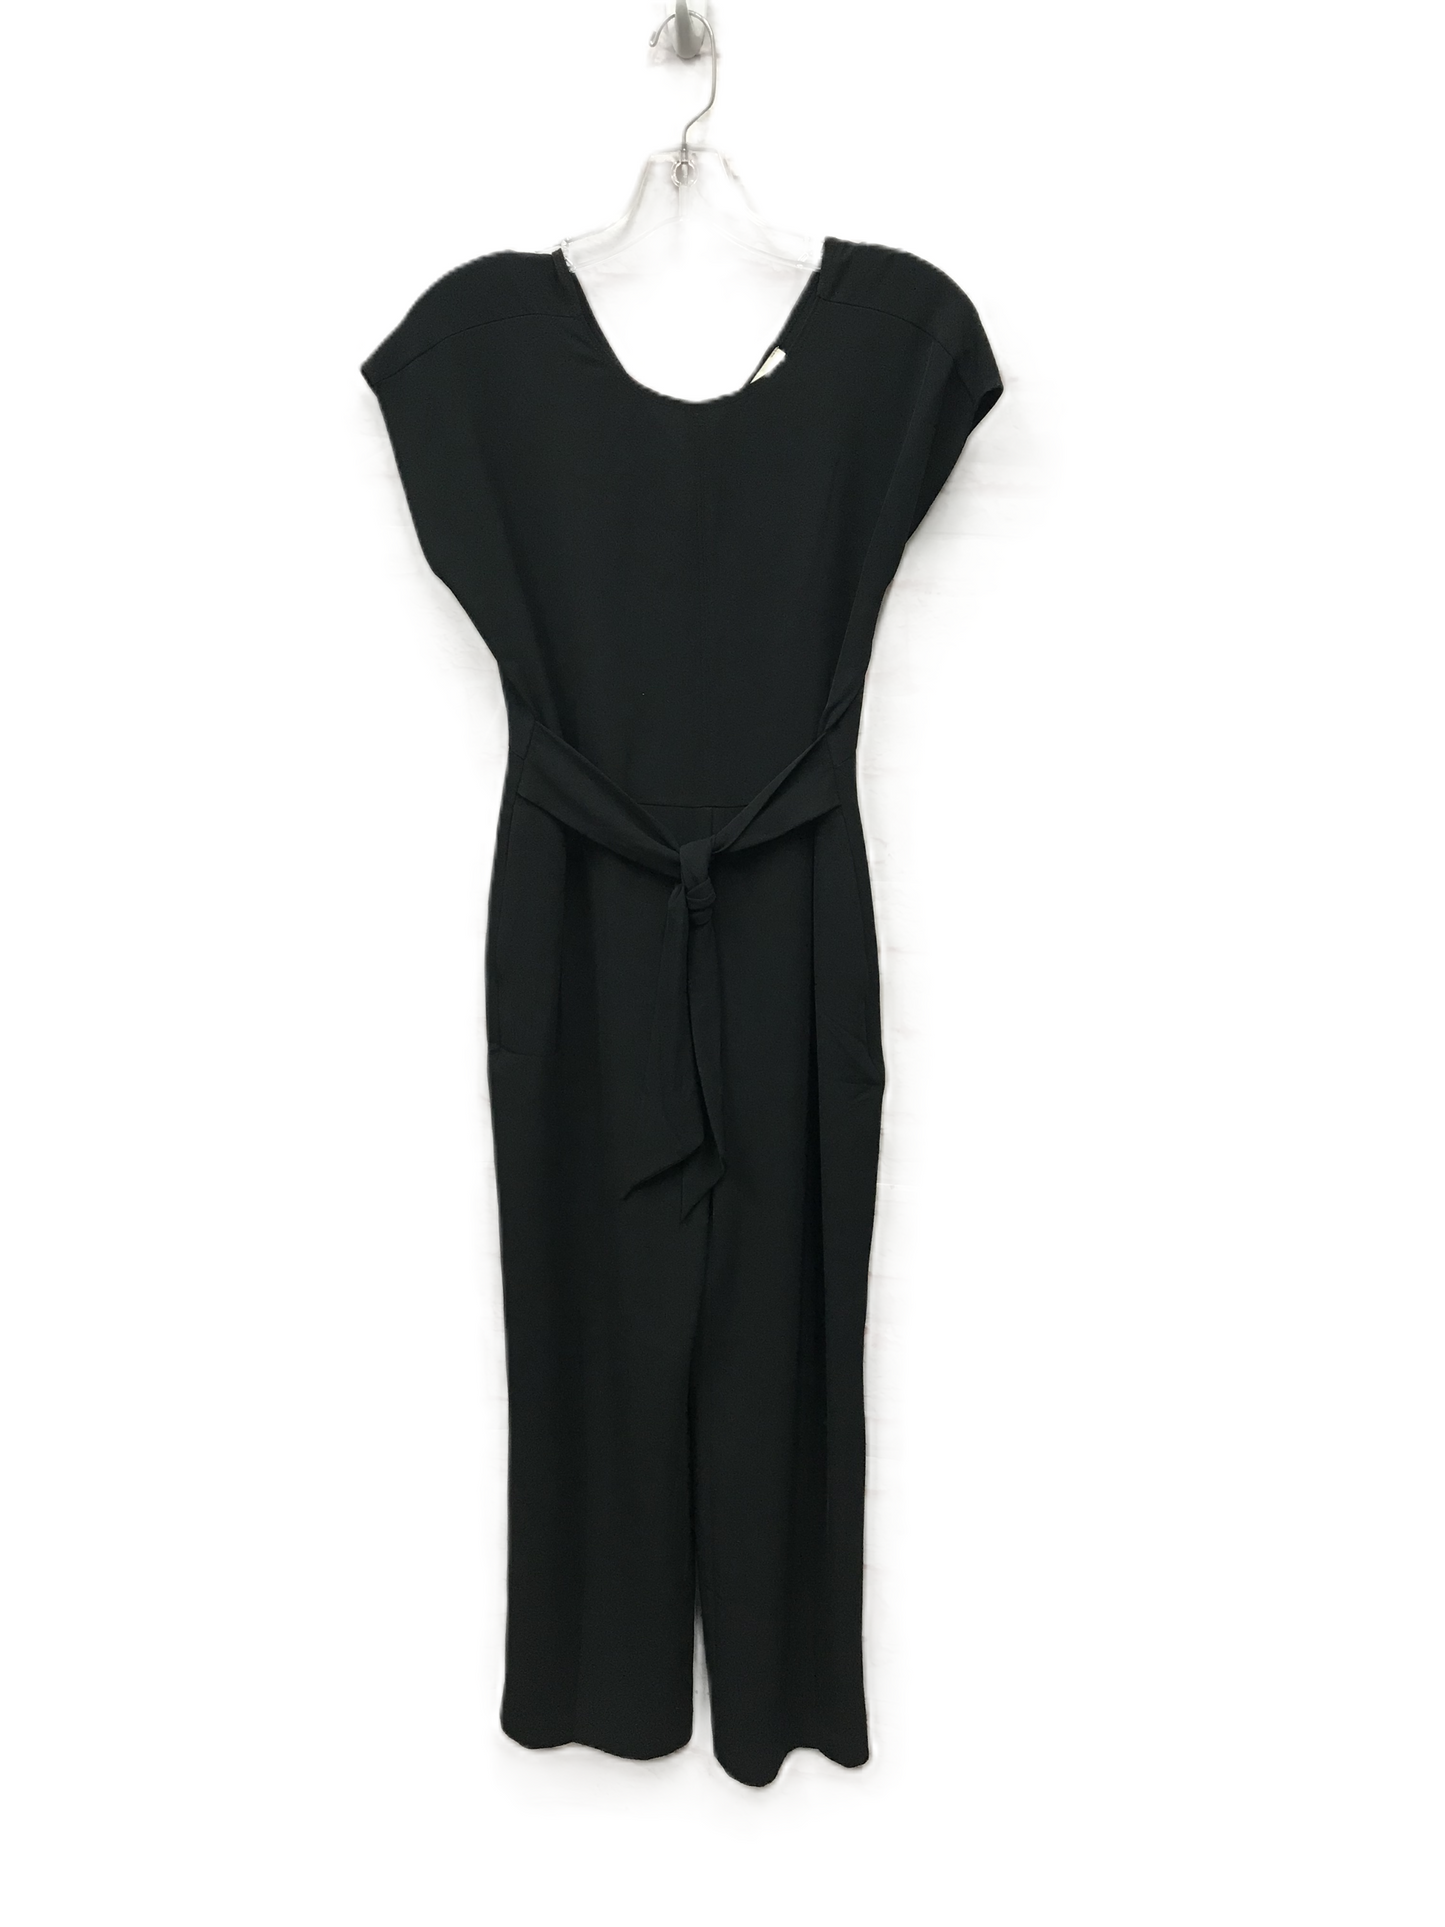 Black Jumpsuit By Loft, Size: Petite   Xs